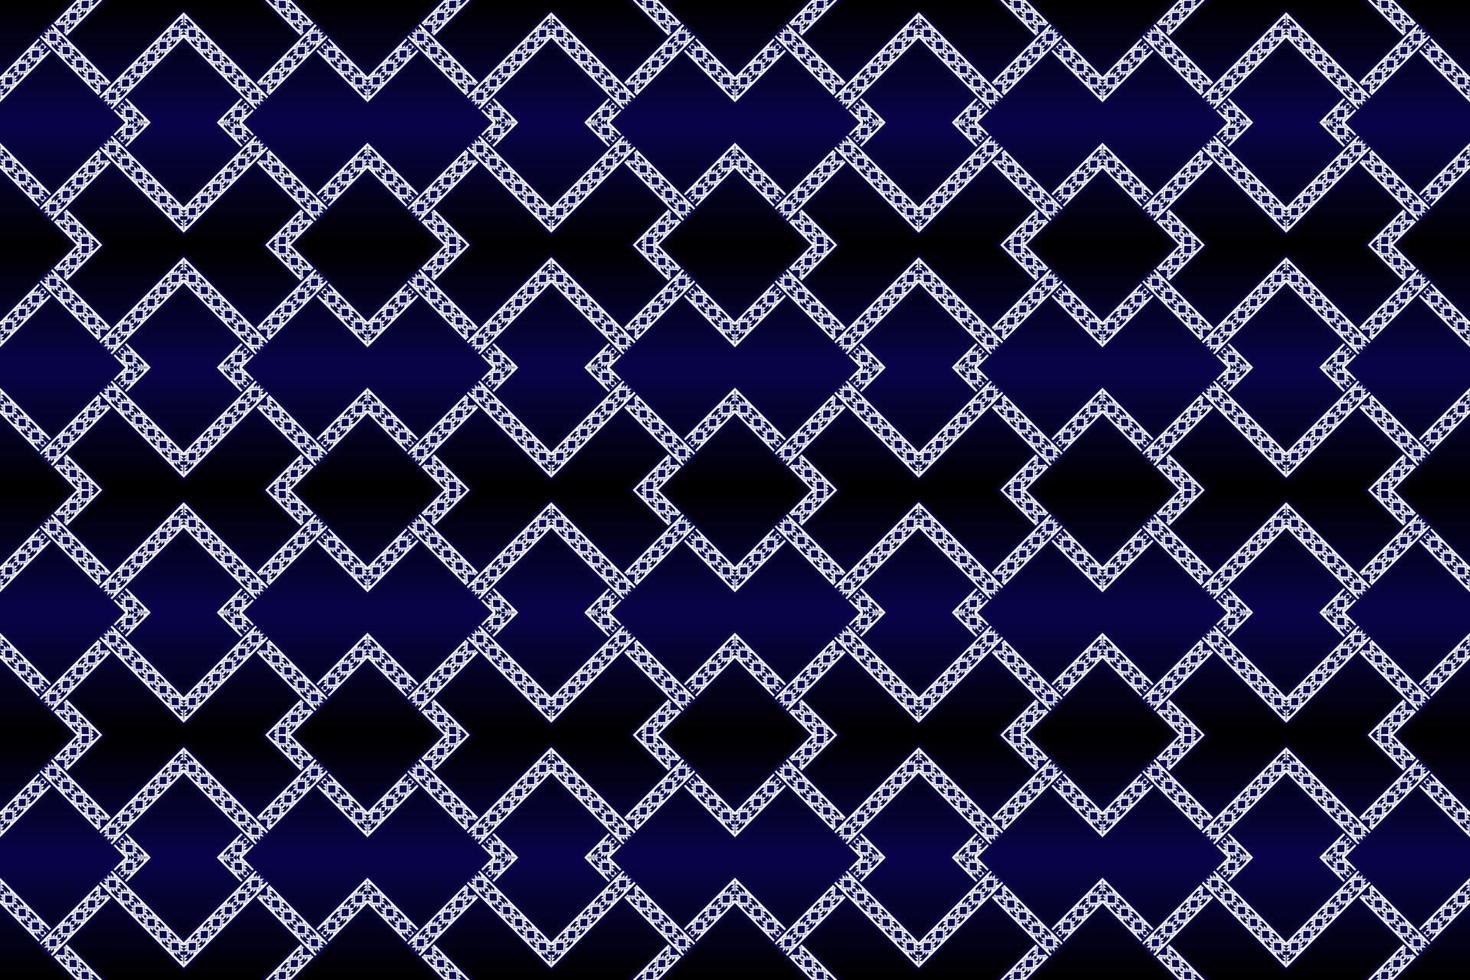 design de padrão geométrico sem costura étnico branco e azul escuro para papel de parede, fundo, tecido, cortina, tapete, roupas e ilustração vetorial de embrulho. vetor